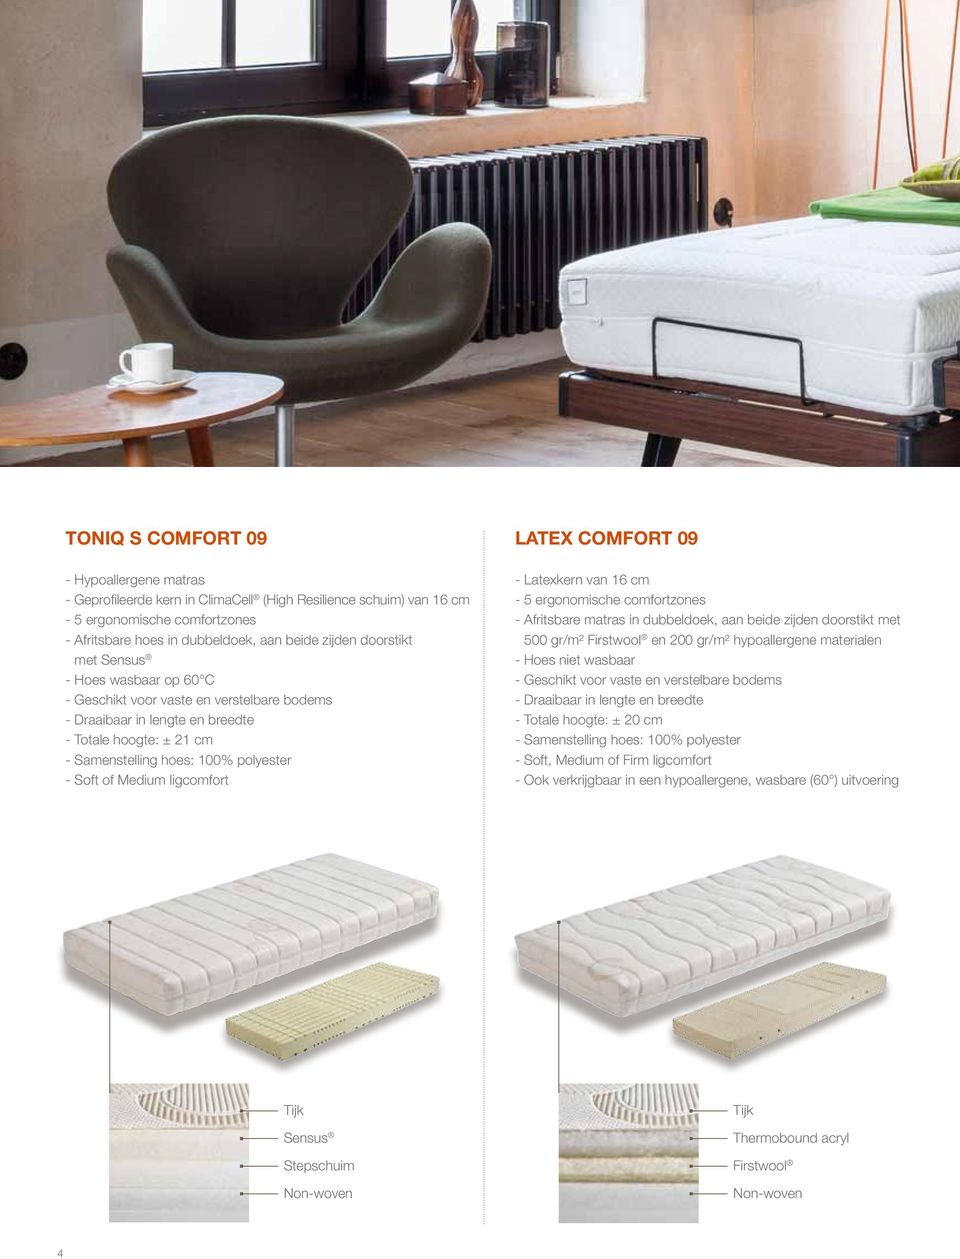 16 cm - 5 ergonomische comfortzones - Afritsbare matras in dubbeldoek, aan beide zijden doorstikt met 500 gr/m² Firstwool en 200 gr/m² hypoallergene materialen - Hoes niet wasbaar - Draaibaar in